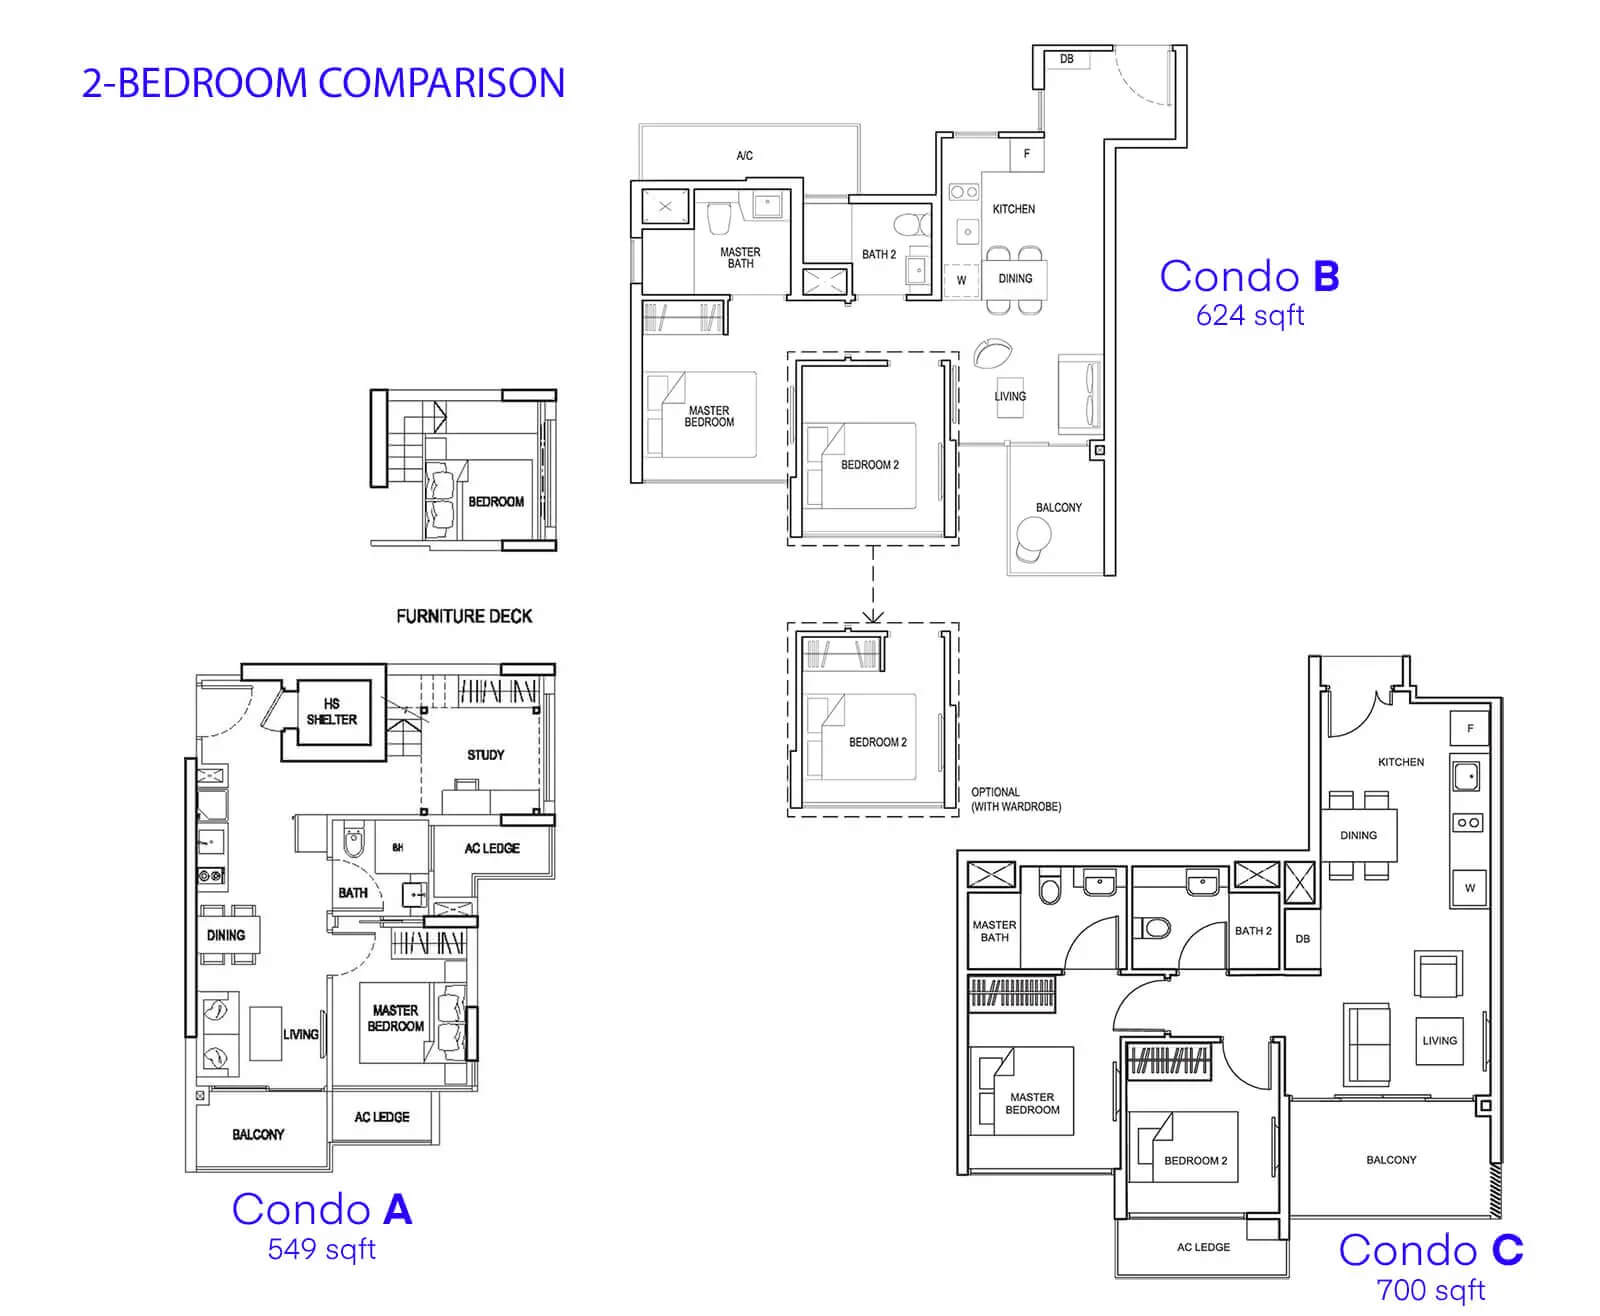 Tanah-Merah-Condo-2-Bedroom-Comparison